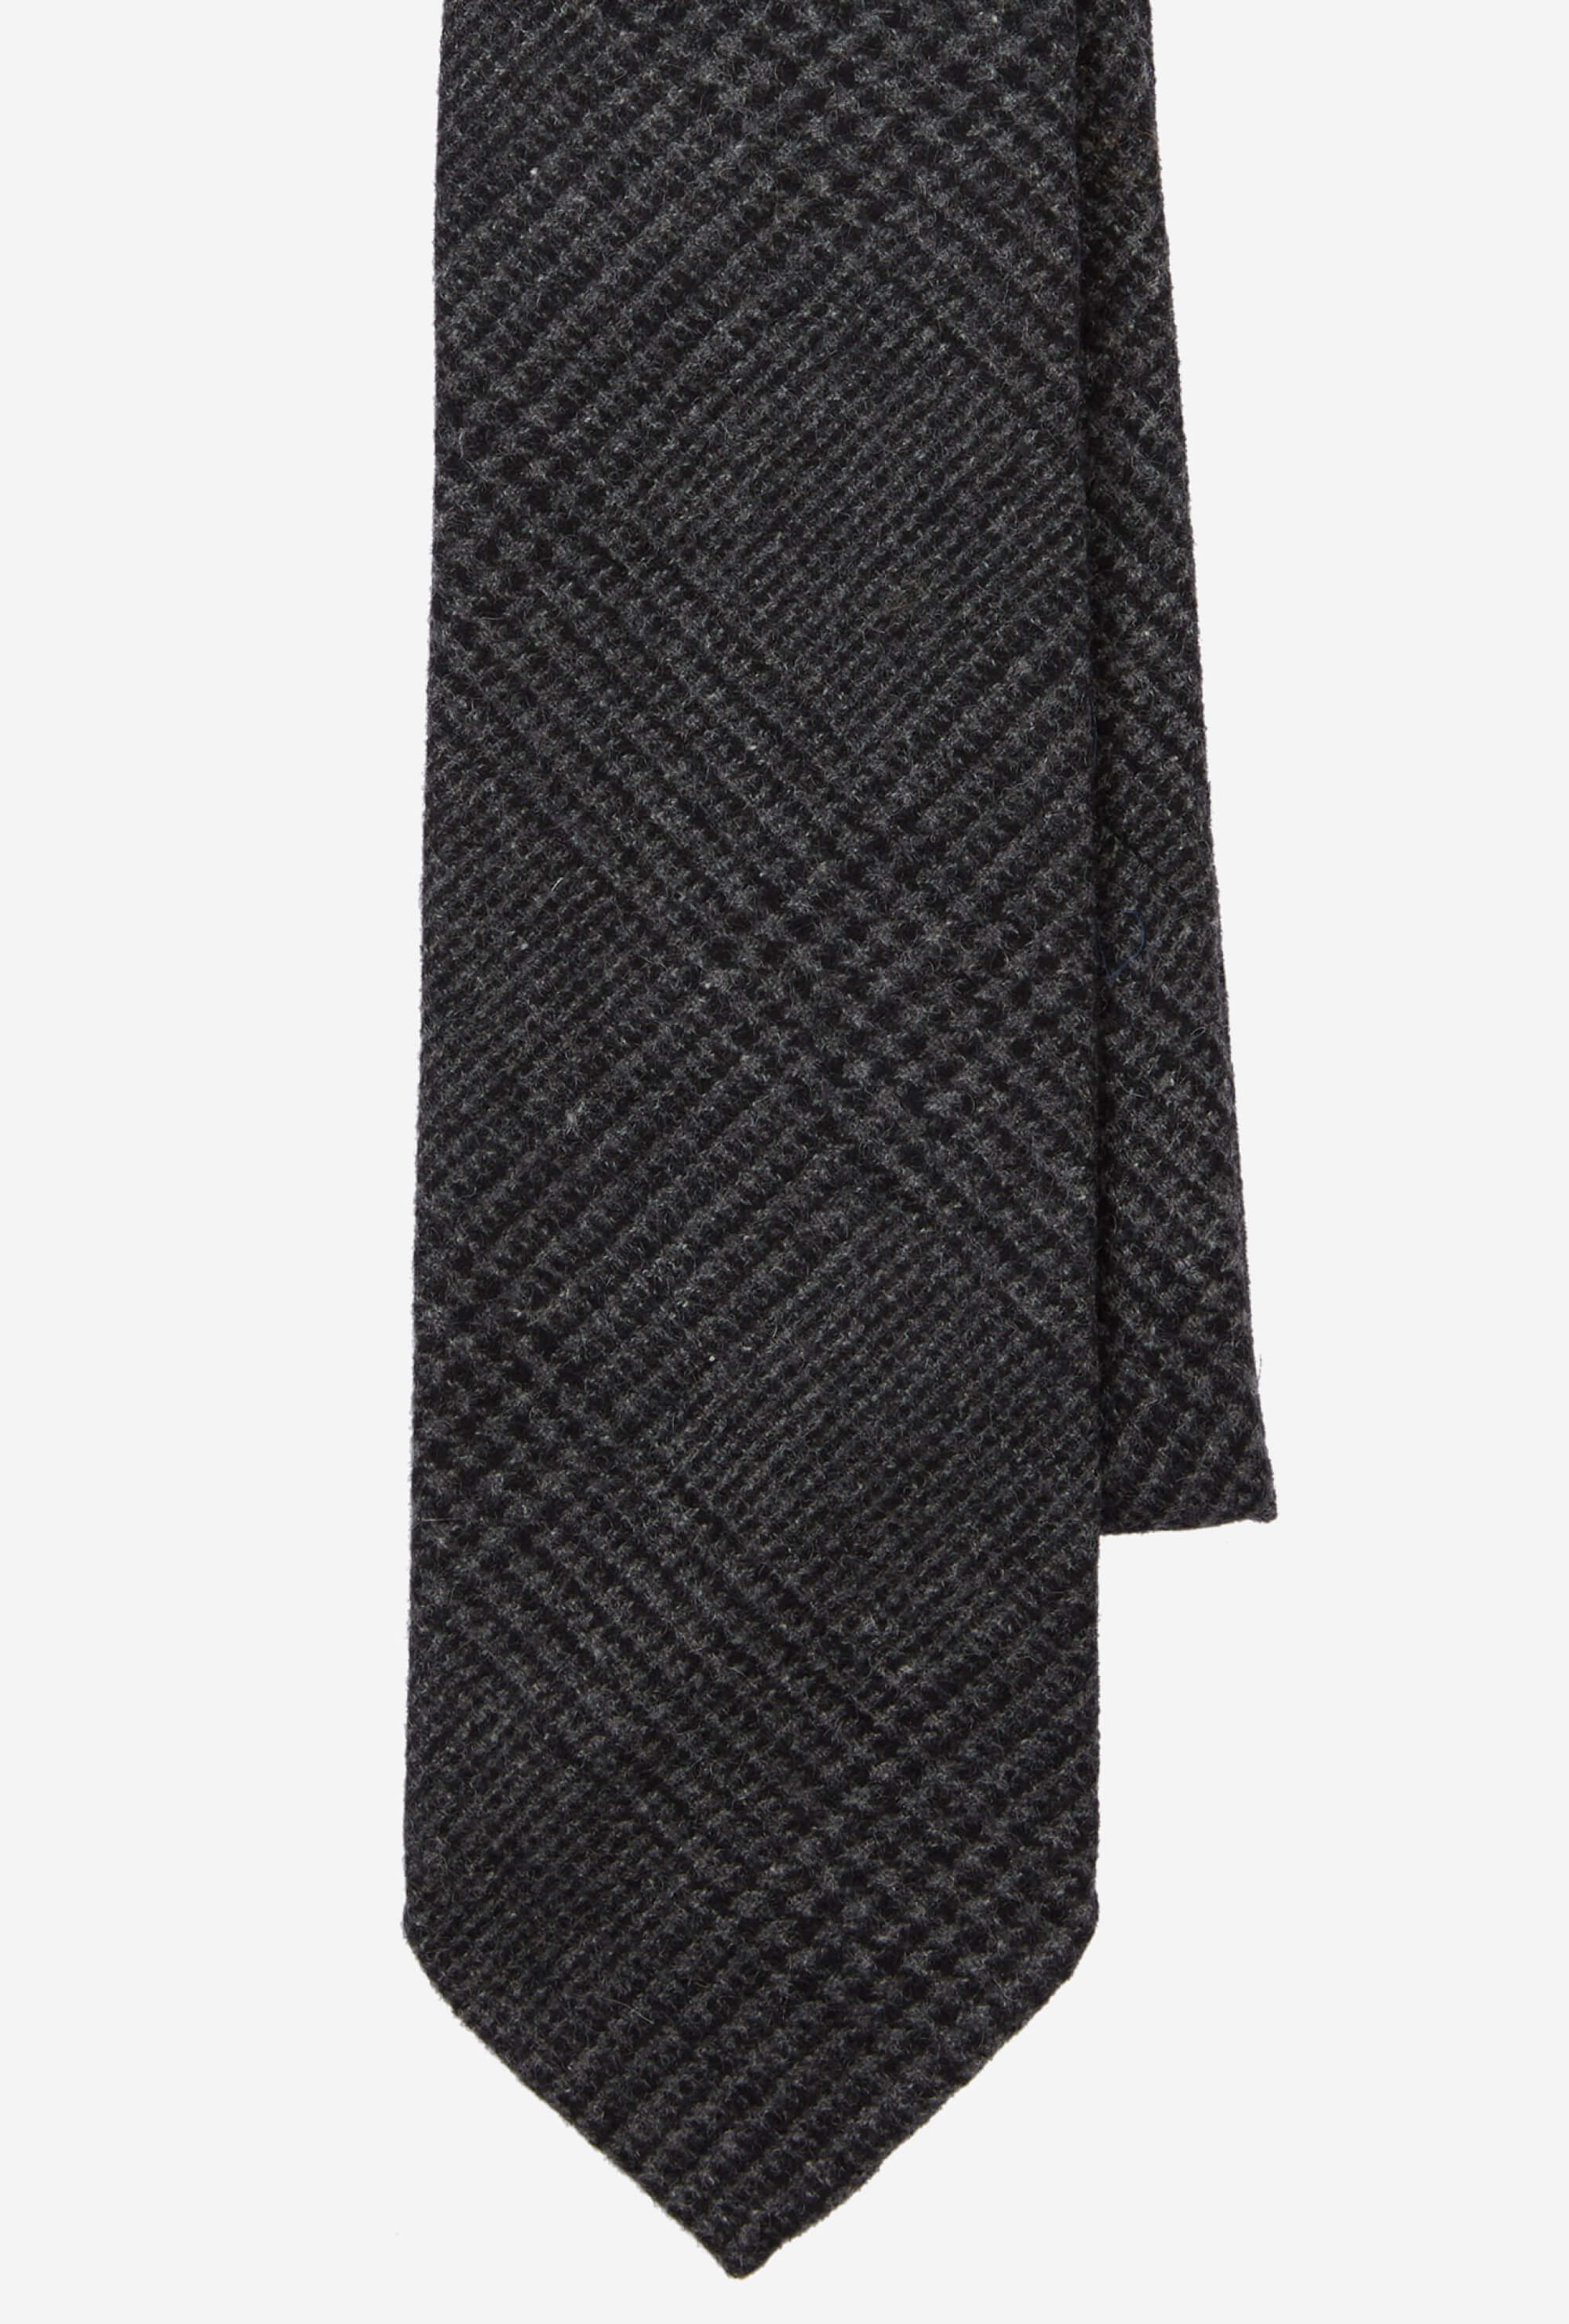 Tie Cashmere Charcoal Glen Plaid